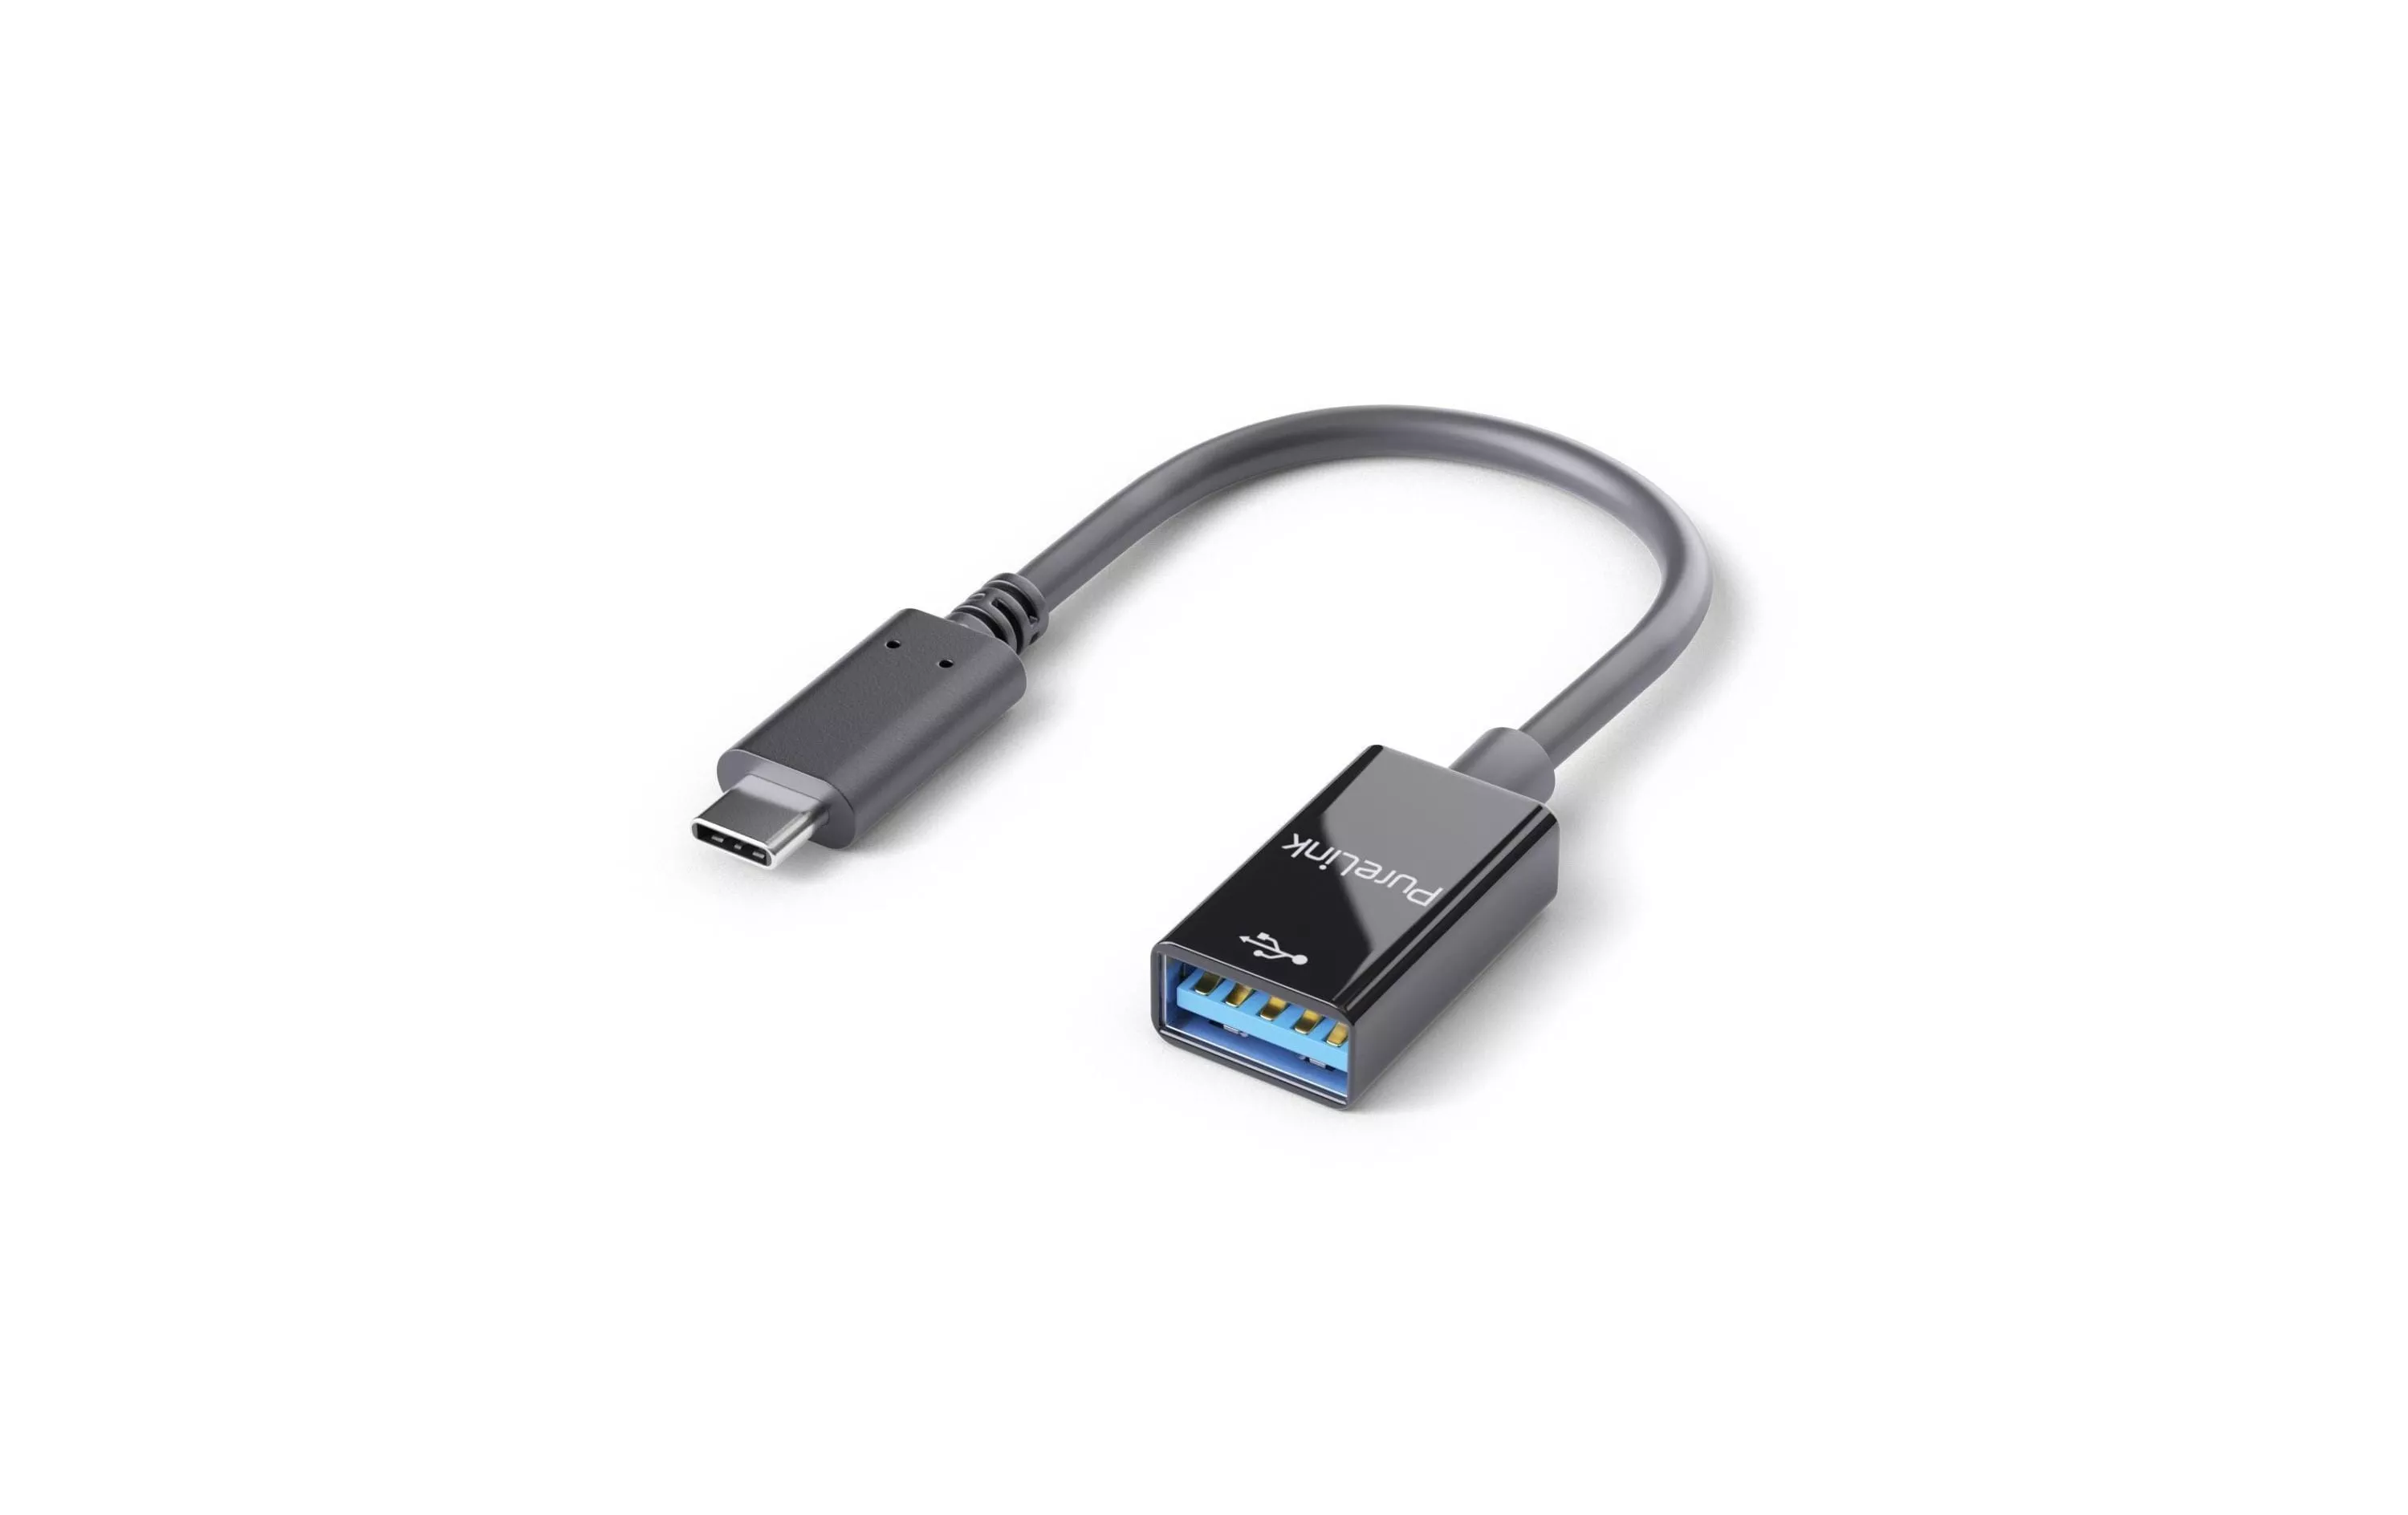 Adattatore PureLink USB 3.1 IS231 USB-C maschio - USB-A femmina, OTG